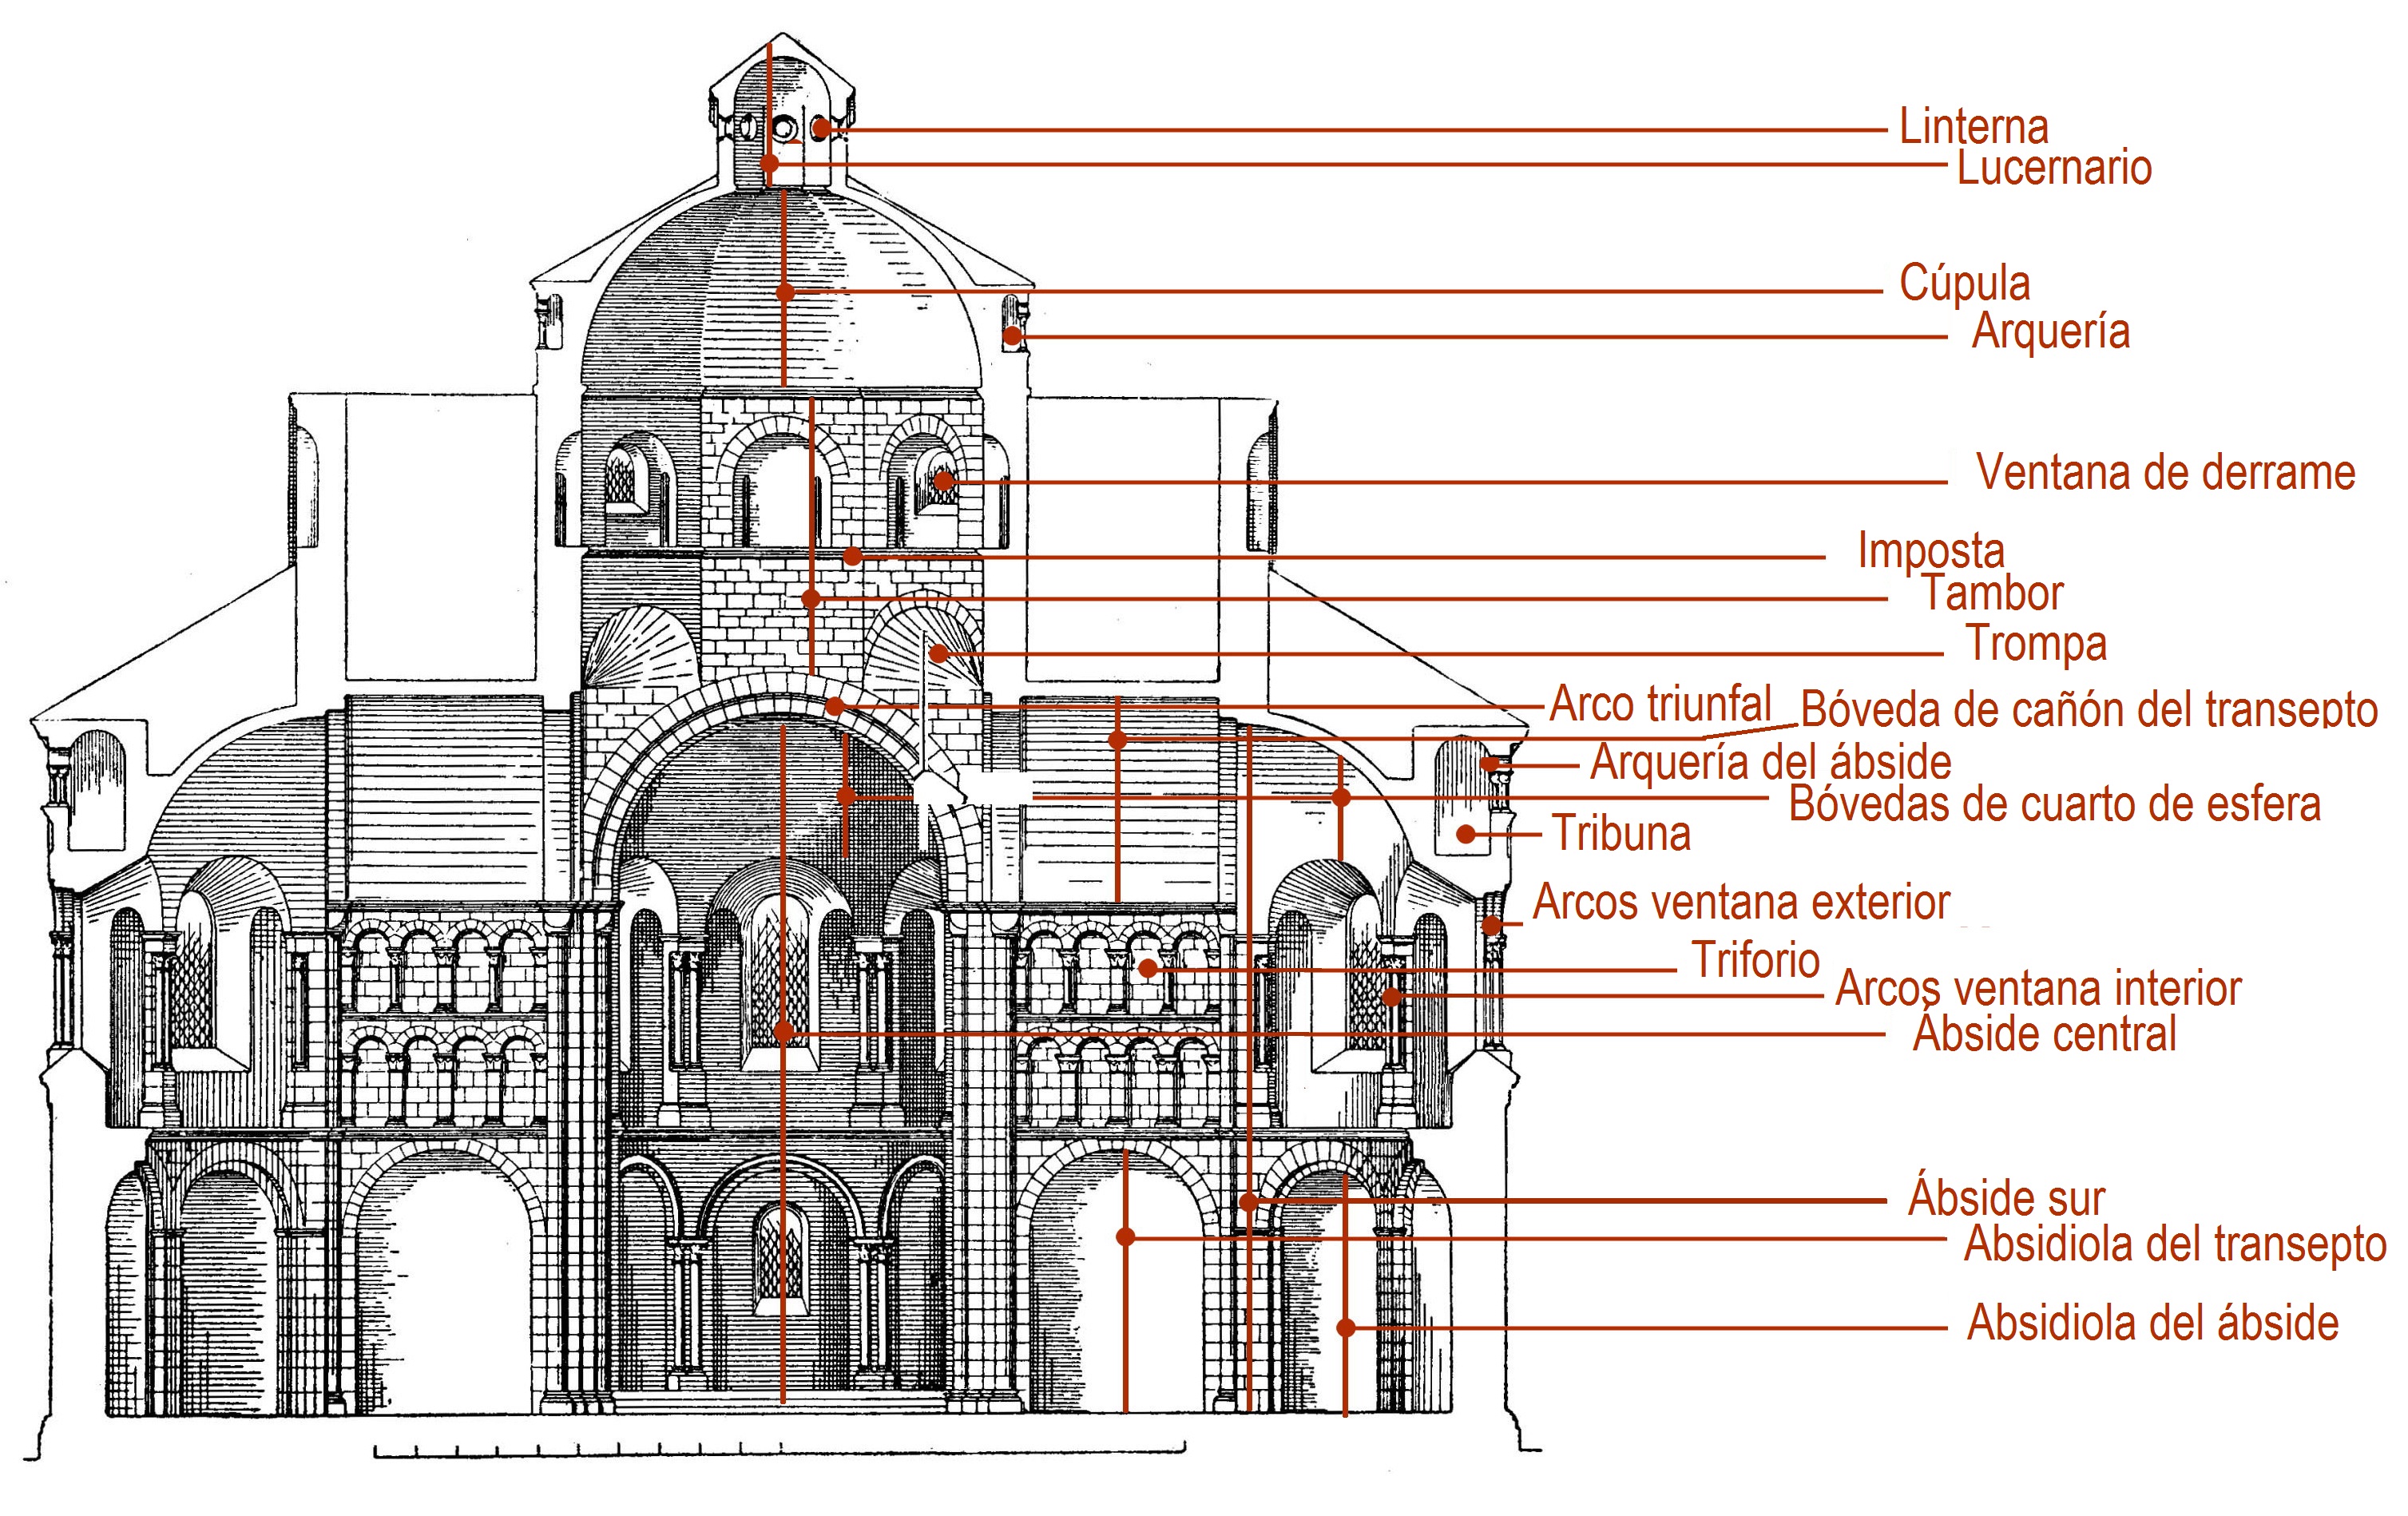 Dibujo de la sección de la iglesia de los Santos Apóstoles de Colonia, con indicación de los elementos principales.